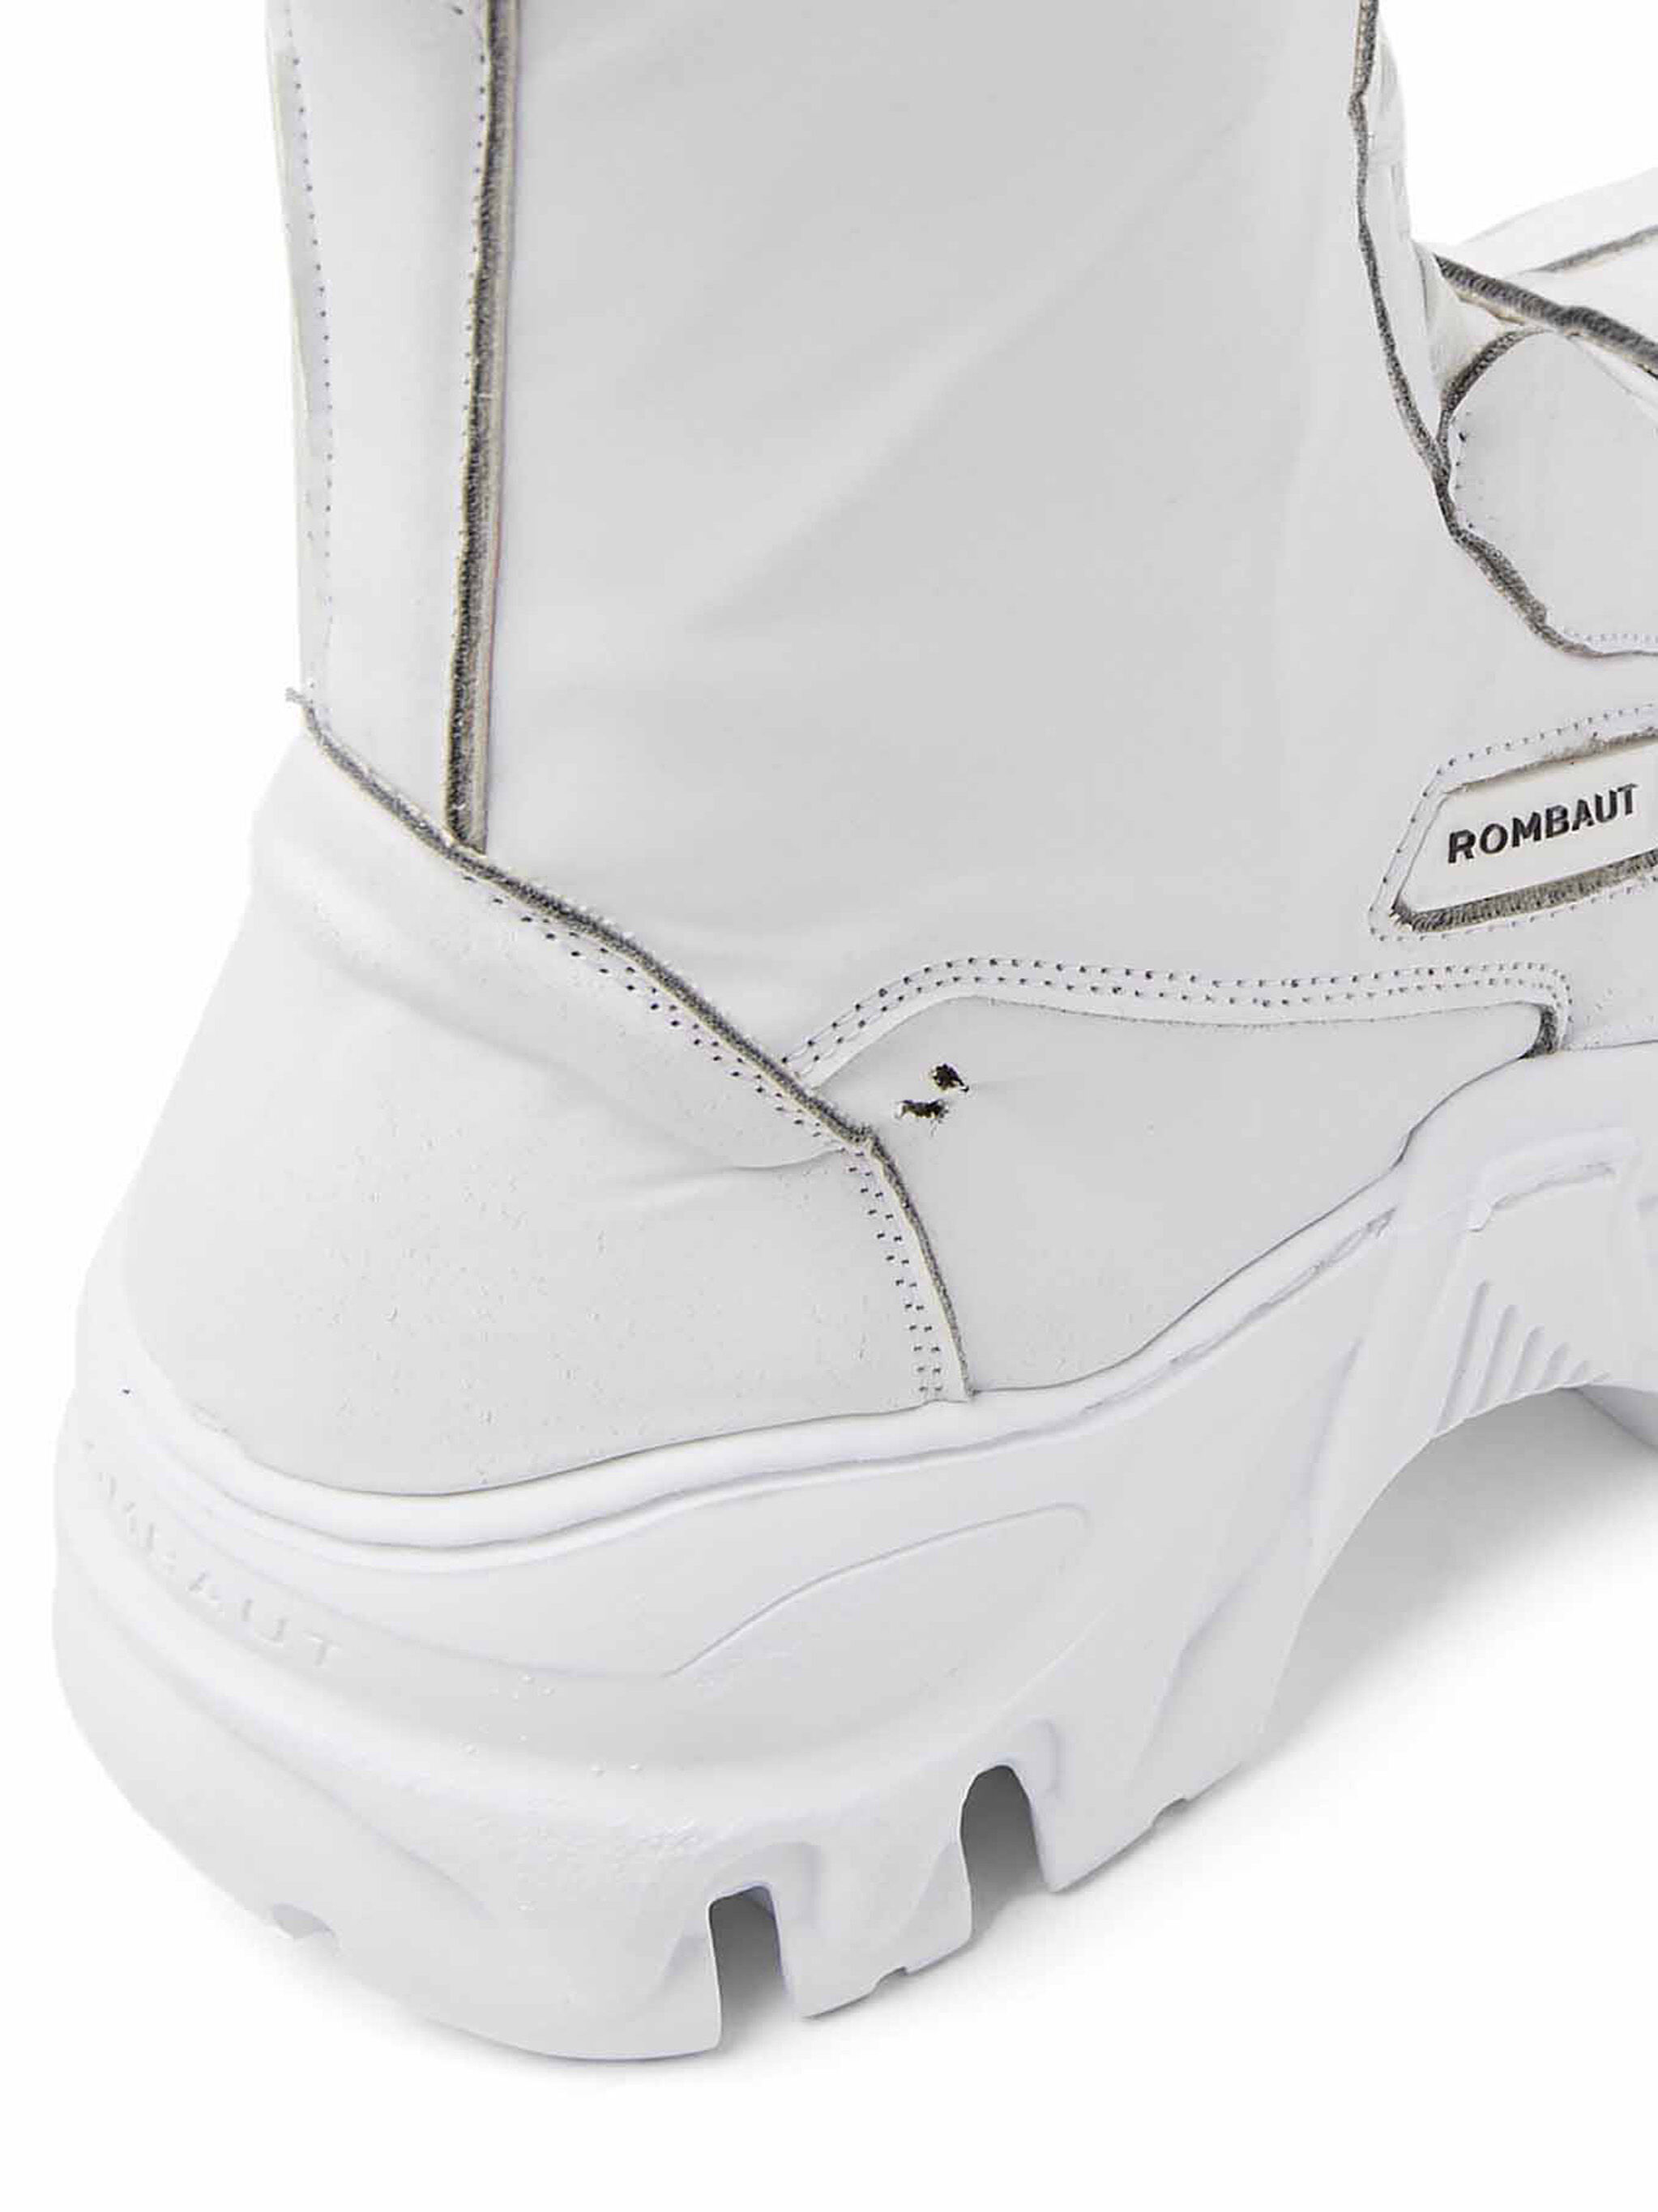 Rombaut Boccaccio II Classic Hydro White Boot | THE FLAMEL®